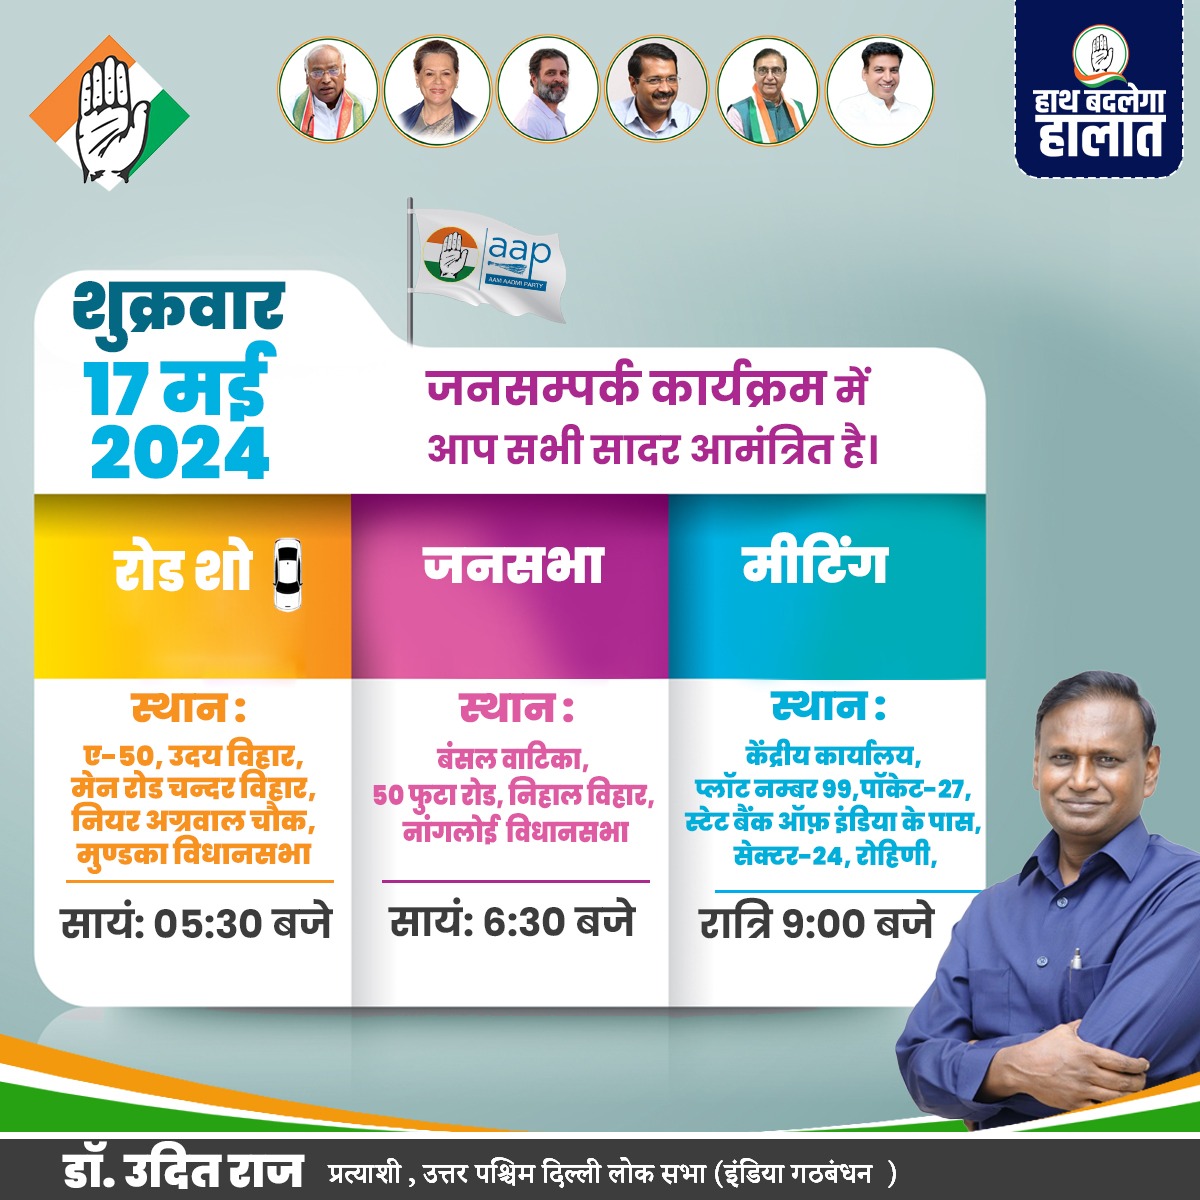 रोड शो एवं जनसंपर्क कार्यक्रम 17 मई 2024, आप सभी आमंत्रित हैं हाथ से बदलेगा हालात ..... उदित से होगा उदय ..... @INCDelhi @AamAadmiParty @RahulGandhi @kharge @ArvindKejriwal #CongressforProgress #GintiKaro #PehliNaukriPakki #northwestdelhi #Druditraj #congress #Congress